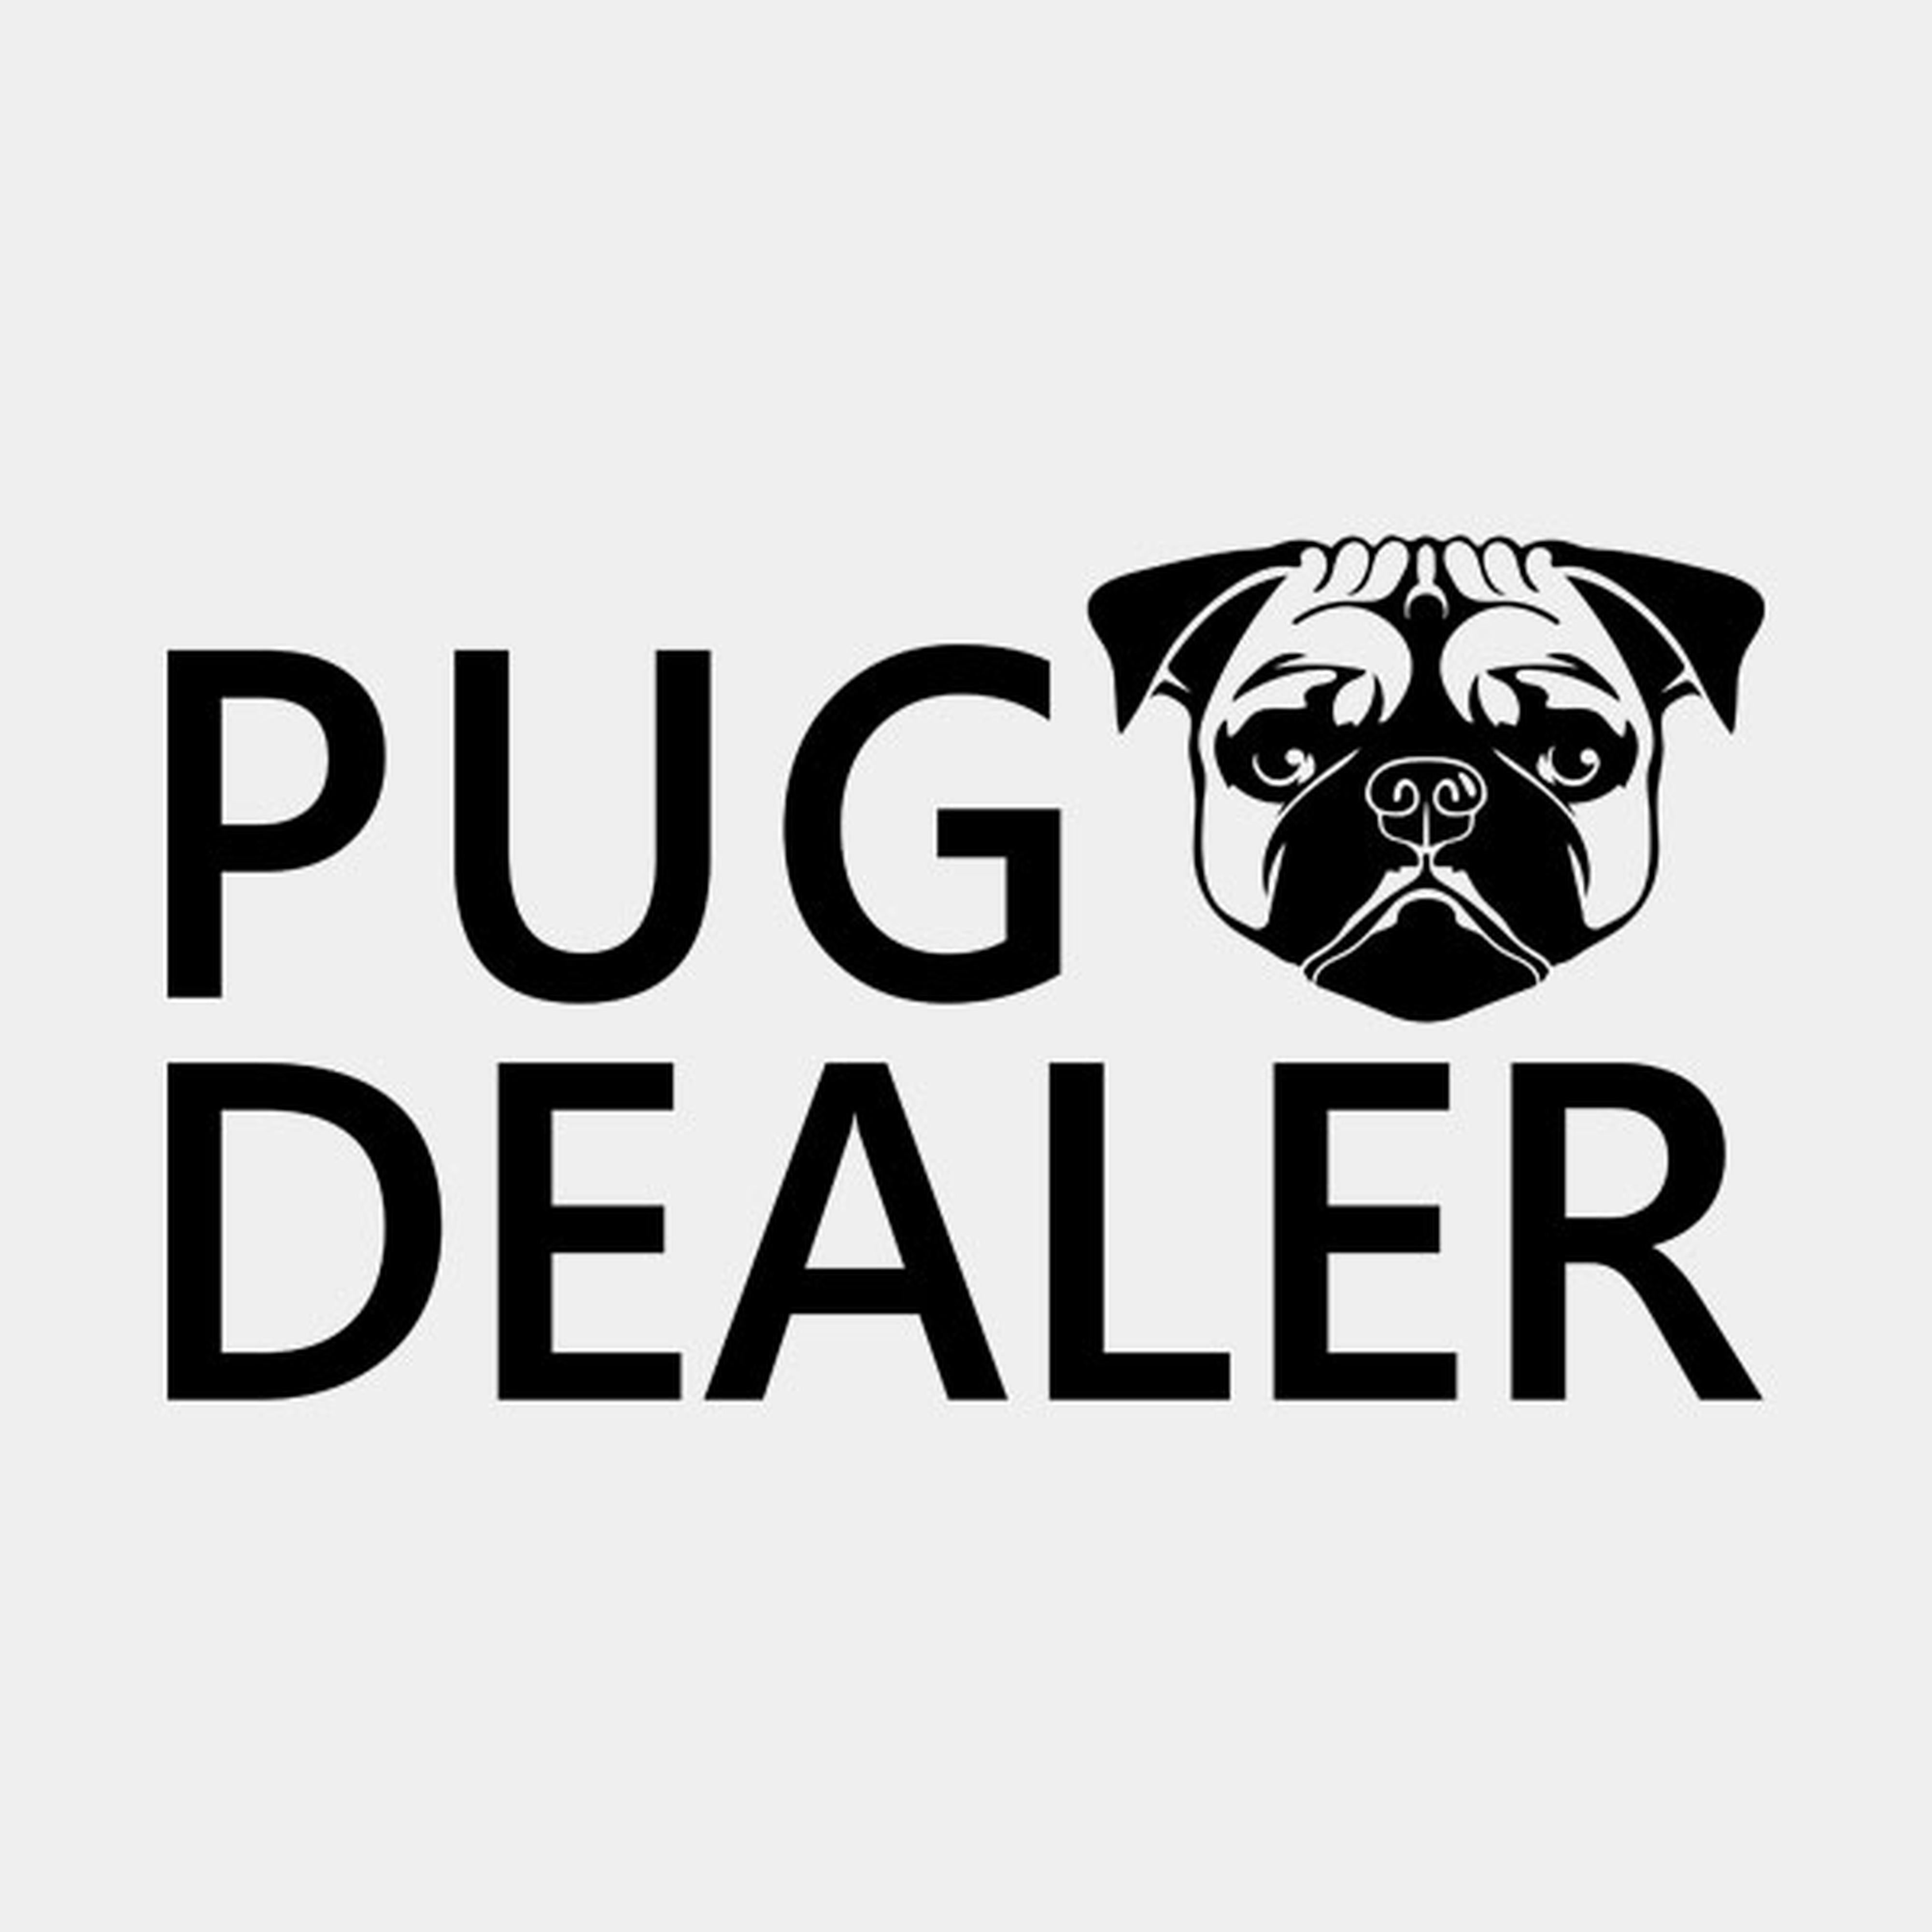 Pug dealer - T-shirt